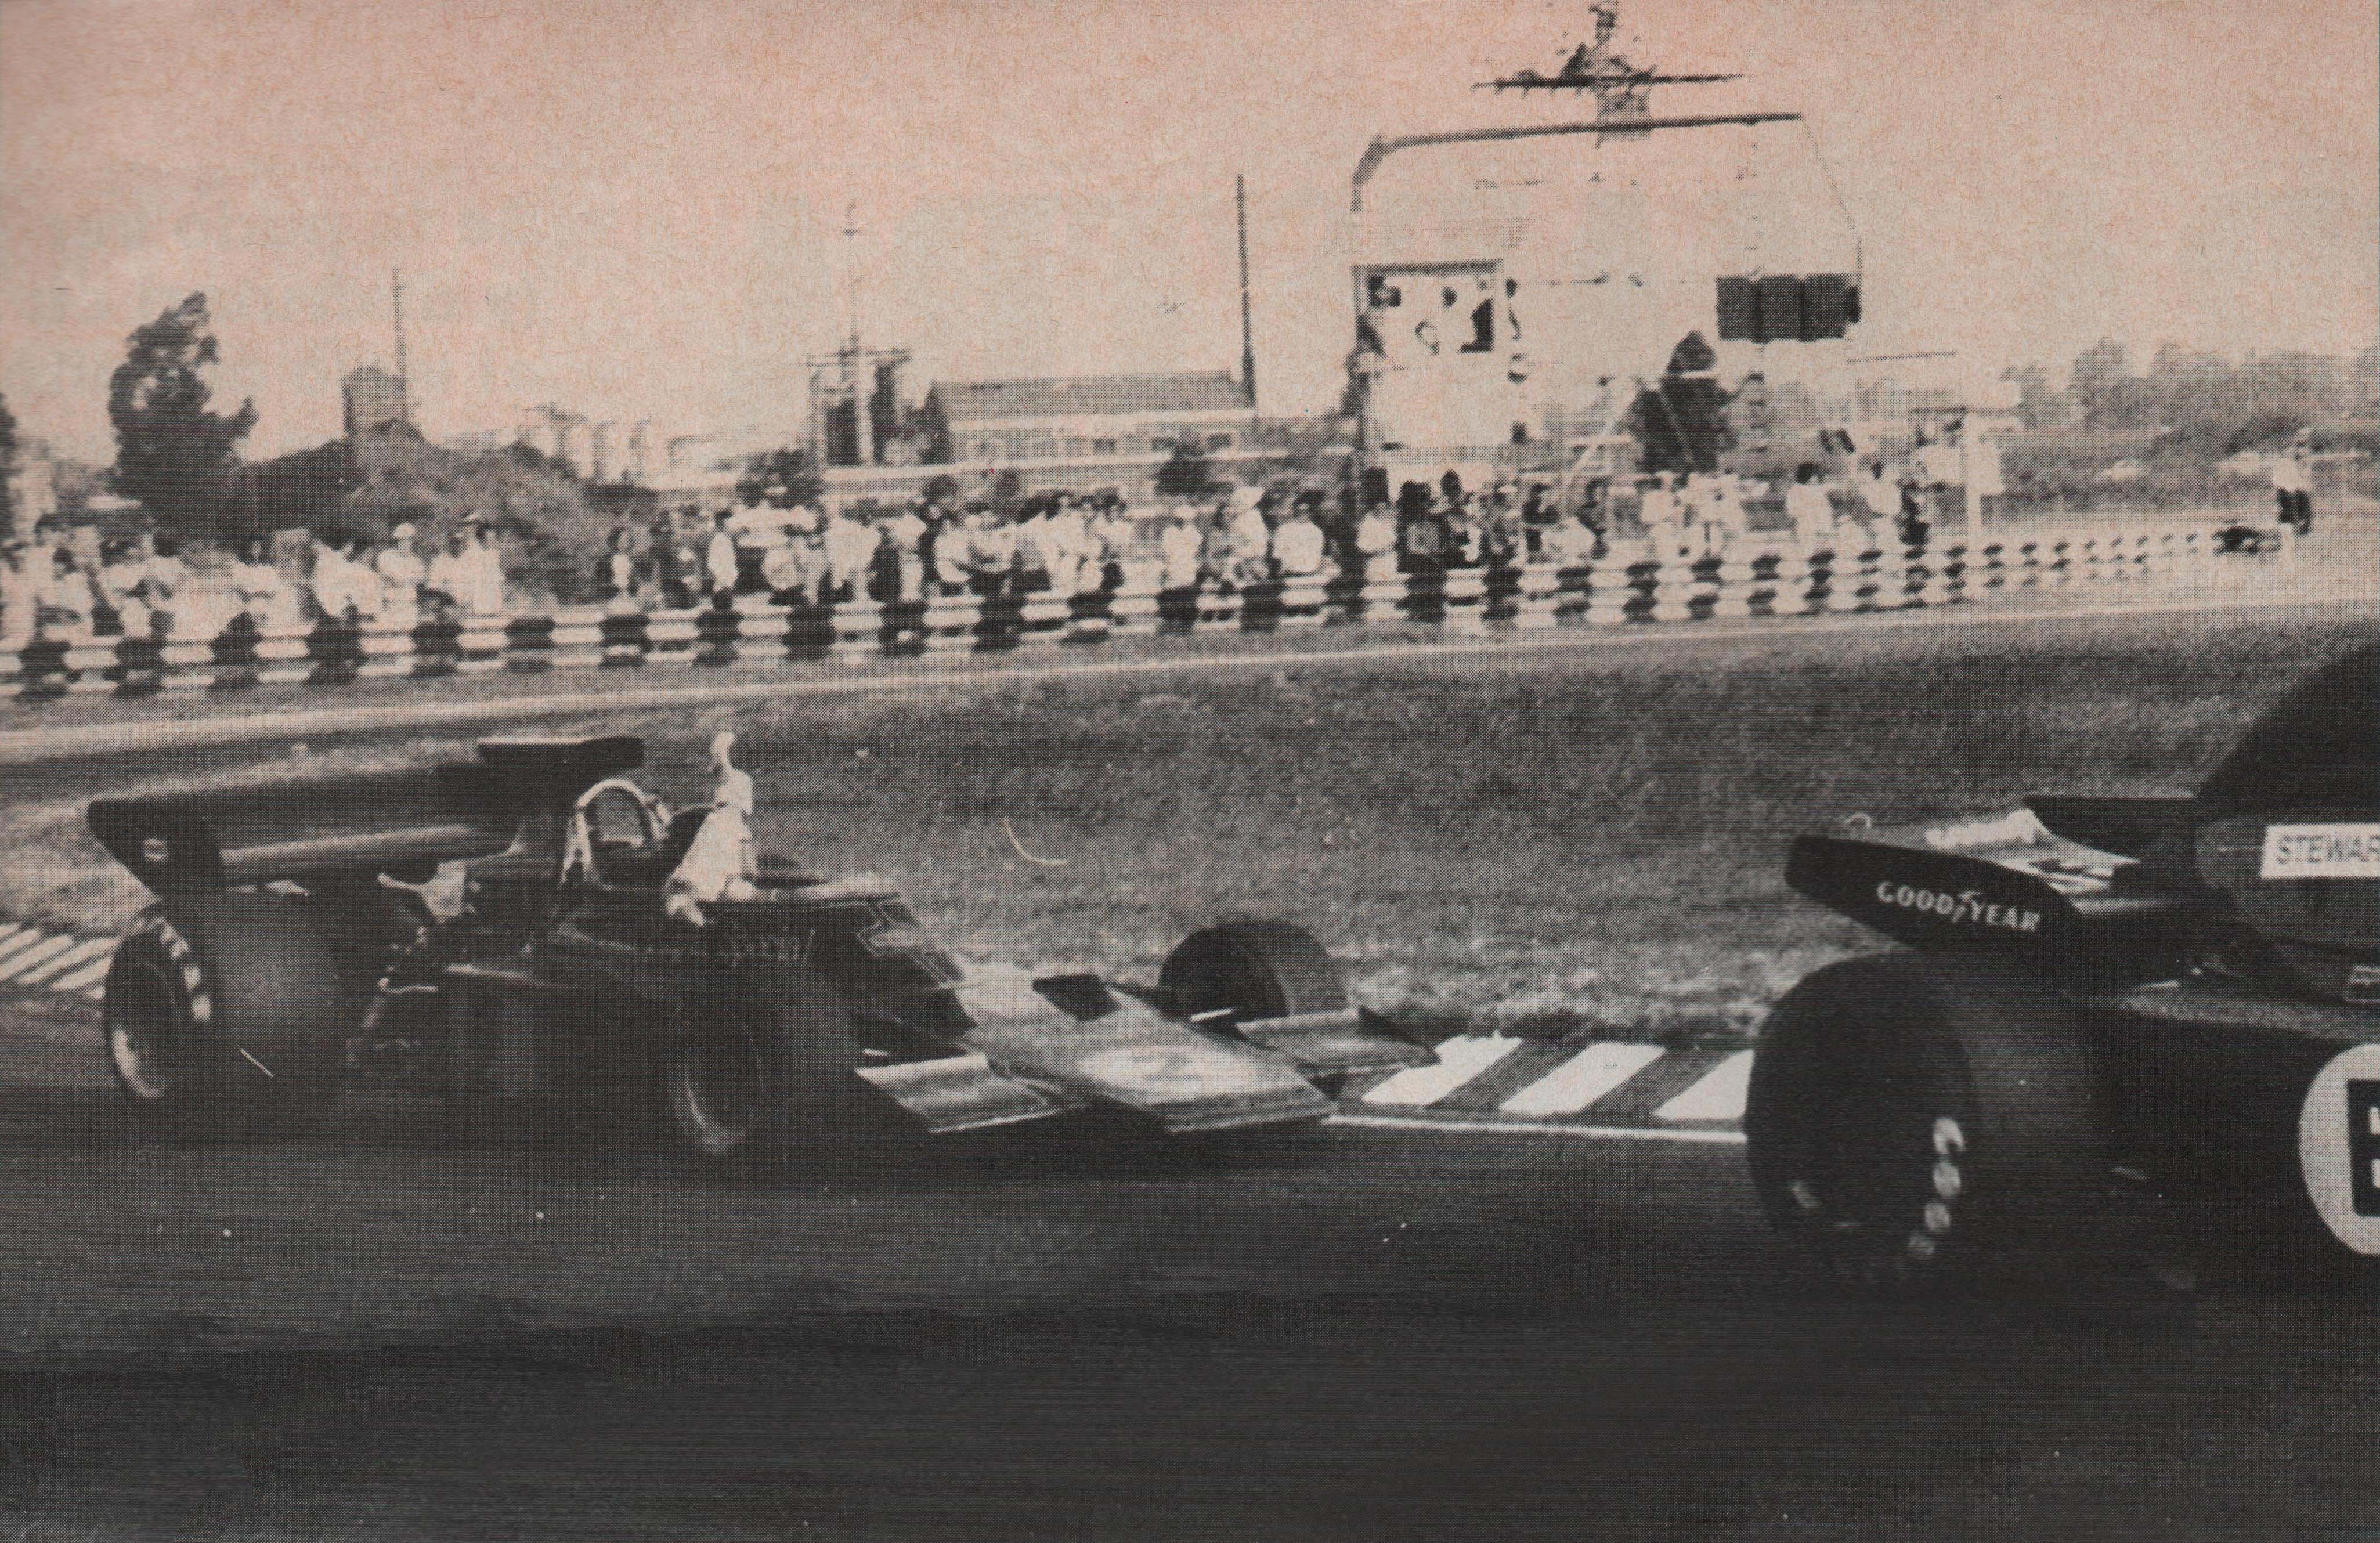 Autódromo de Buenos Aires en 1973. En la Curva del Ombú, Fittipaldi le reclama a Stewart levantándole su brazo derecho (Archivo CORSA).